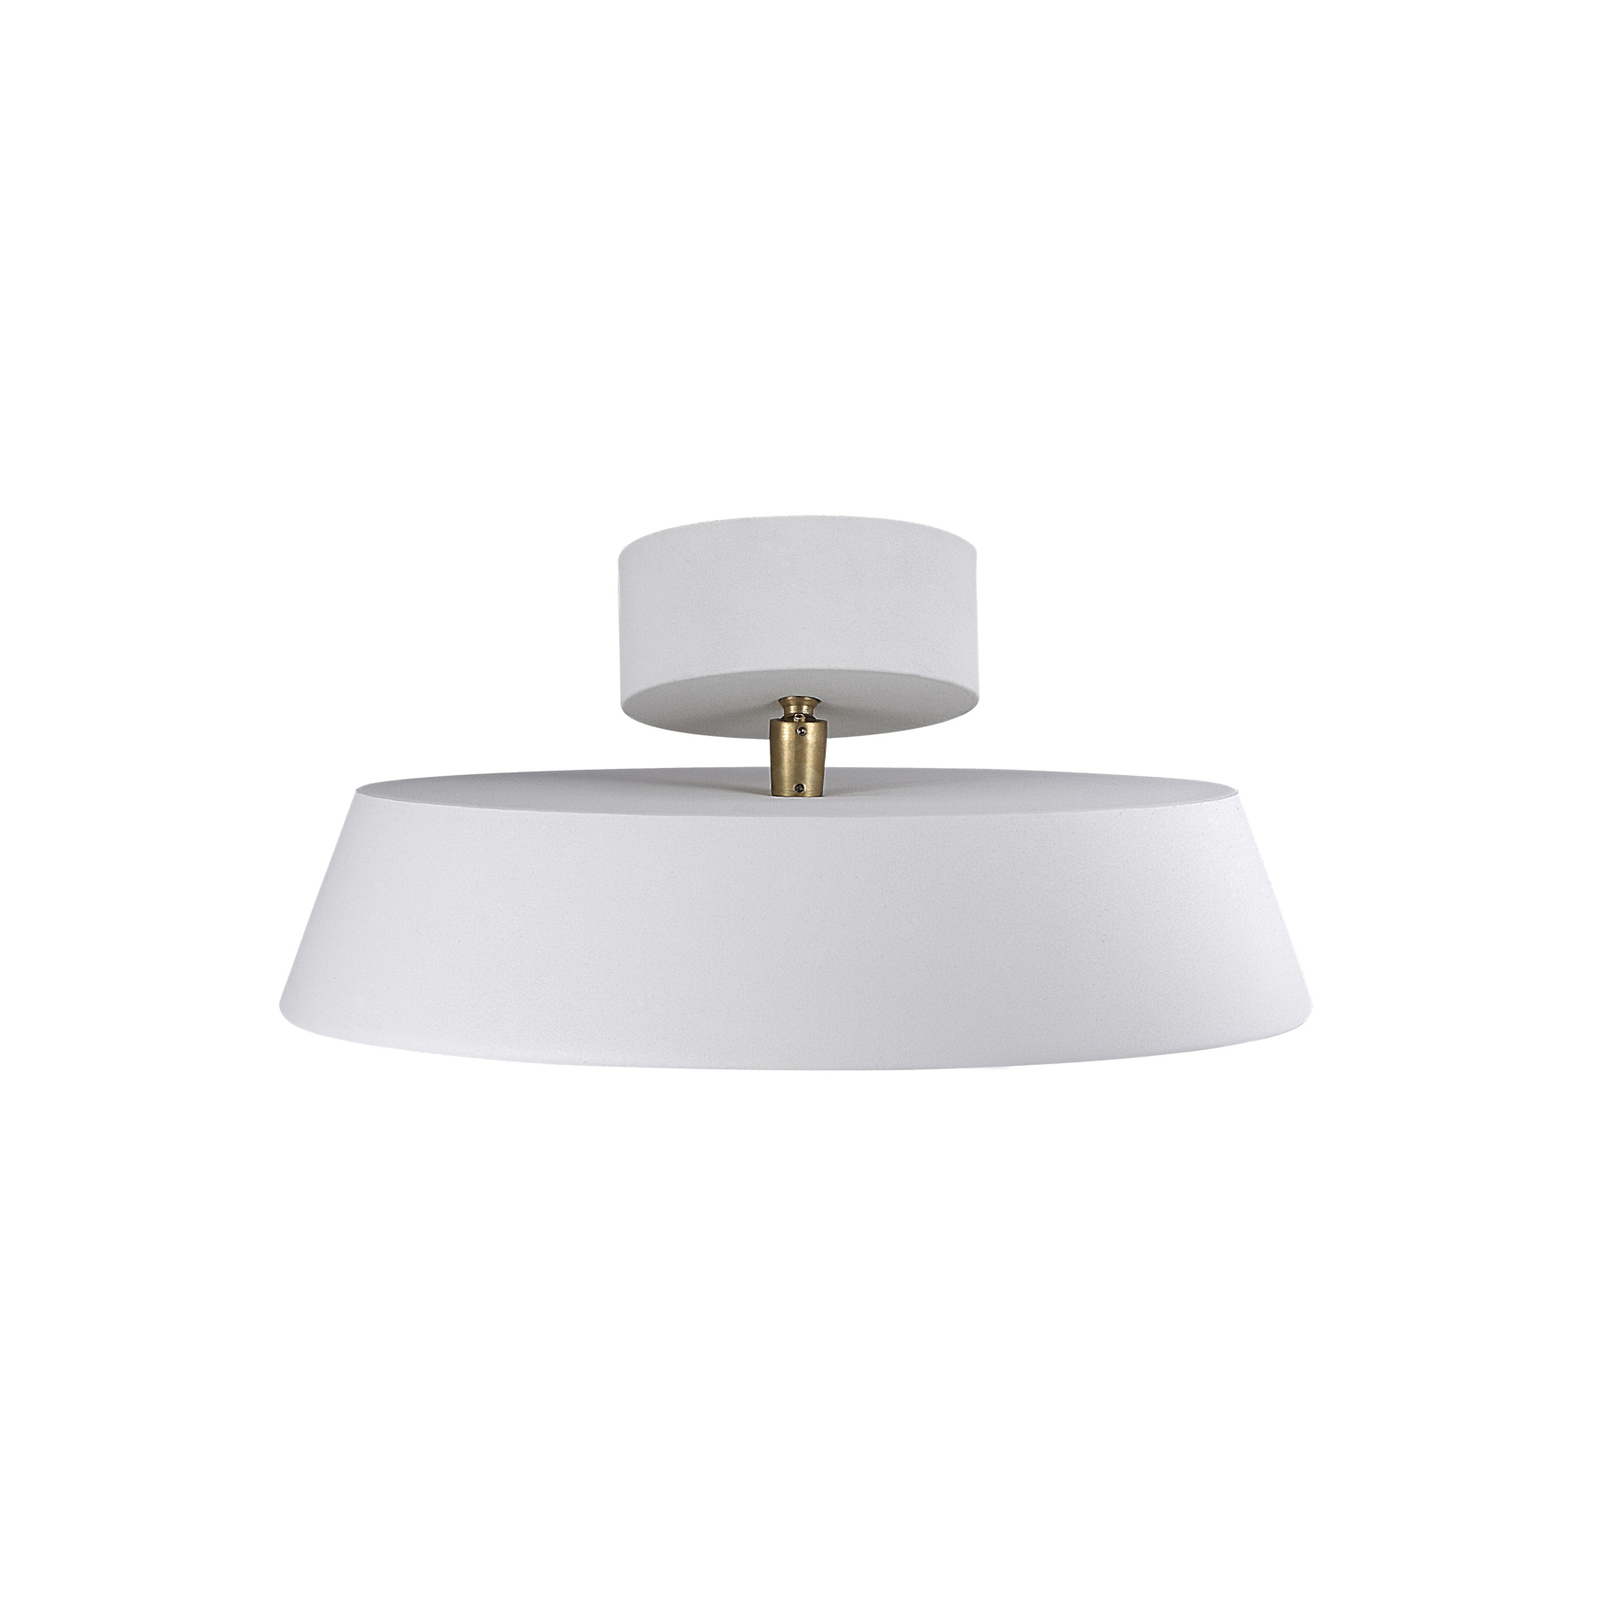 LED stropna svetilka Kaito 2 Dim, bela, Ø 30 cm, z možnostjo zatemnitve